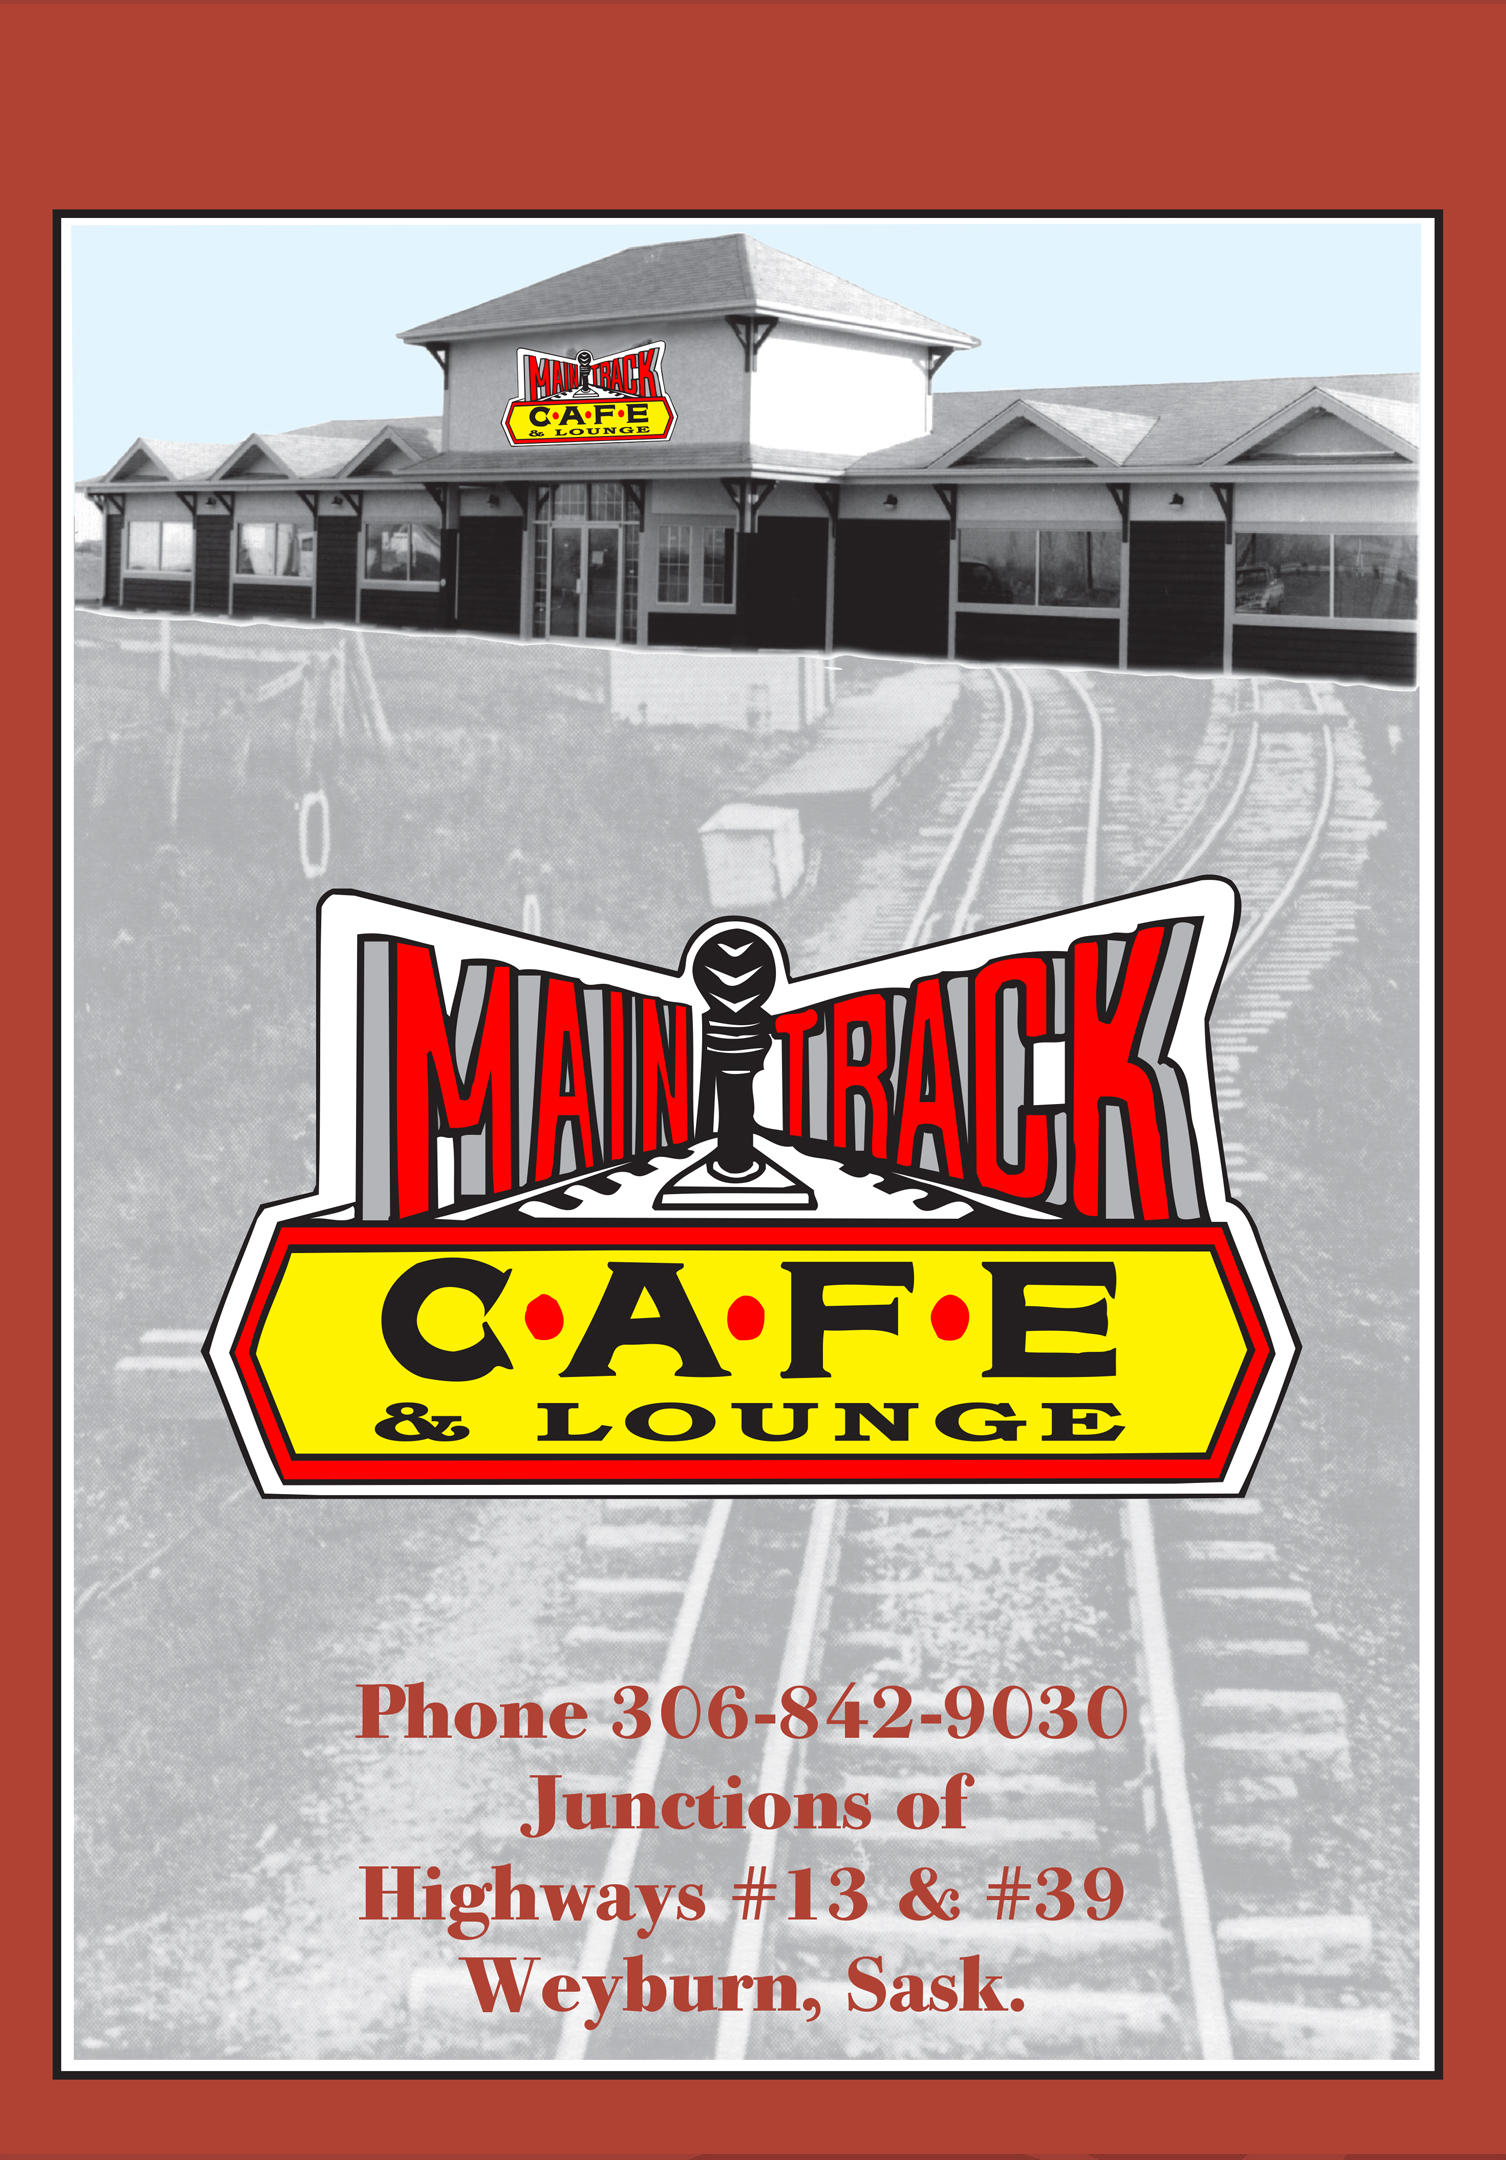 Main Track Cafe menu